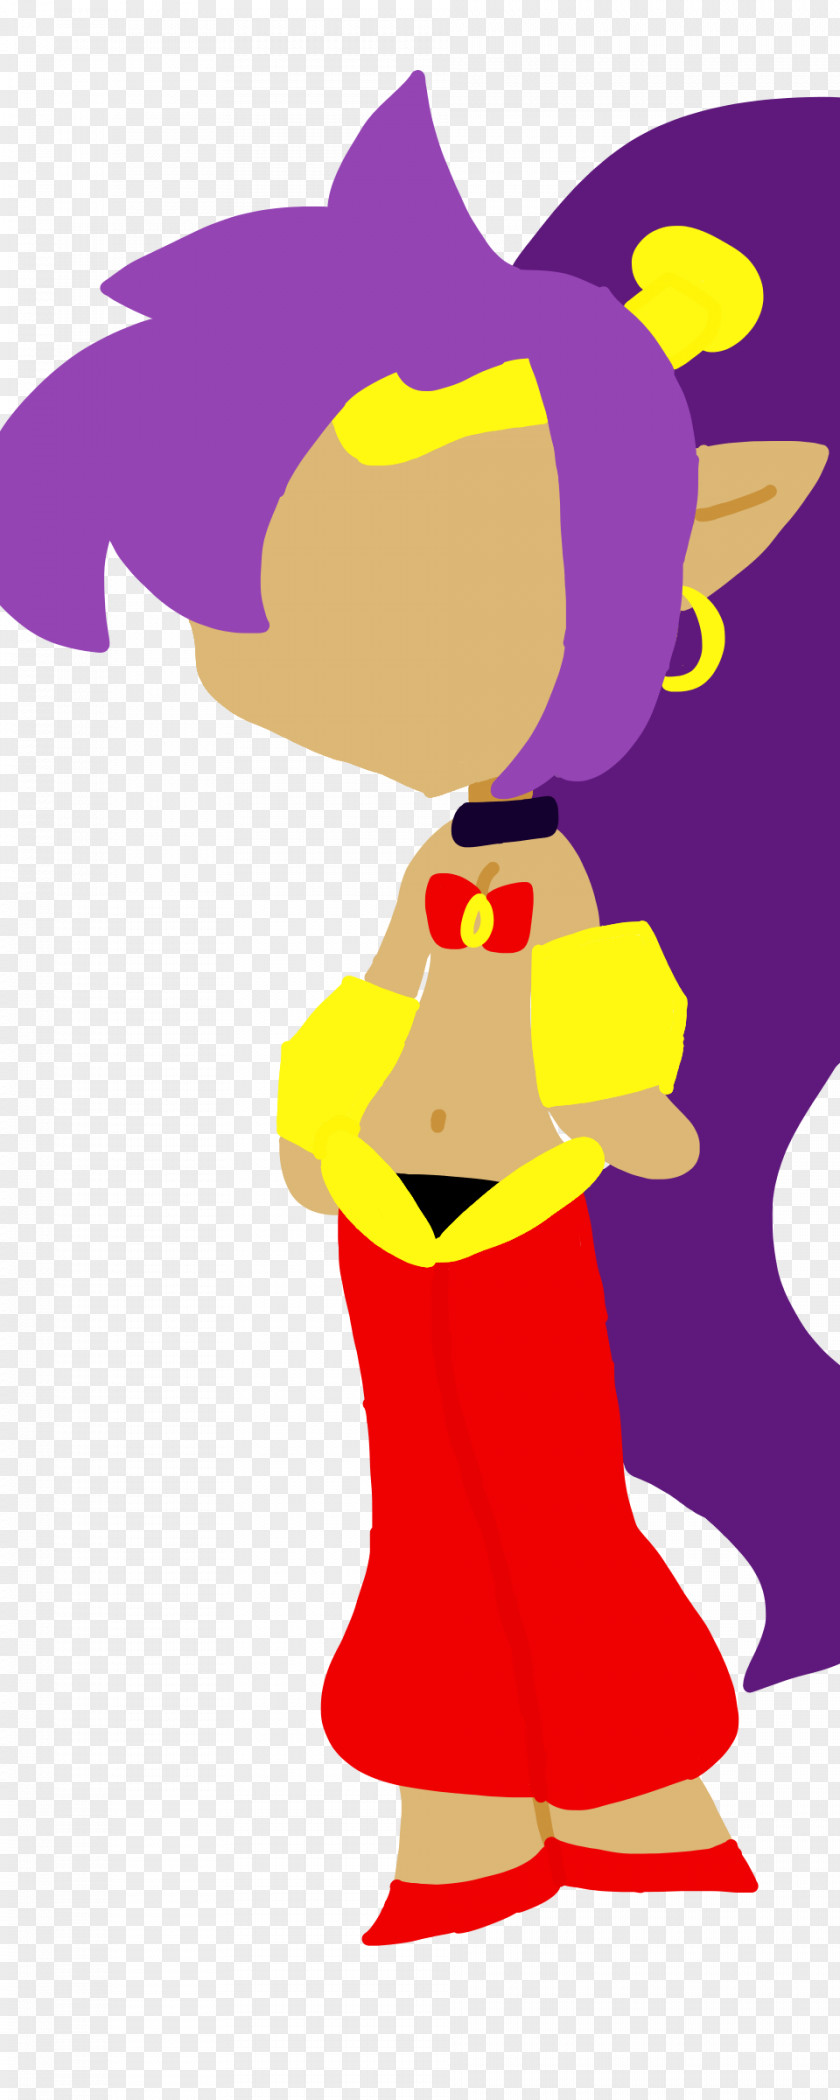 Shantae DeviantArt Illustration Fan Art Image PNG